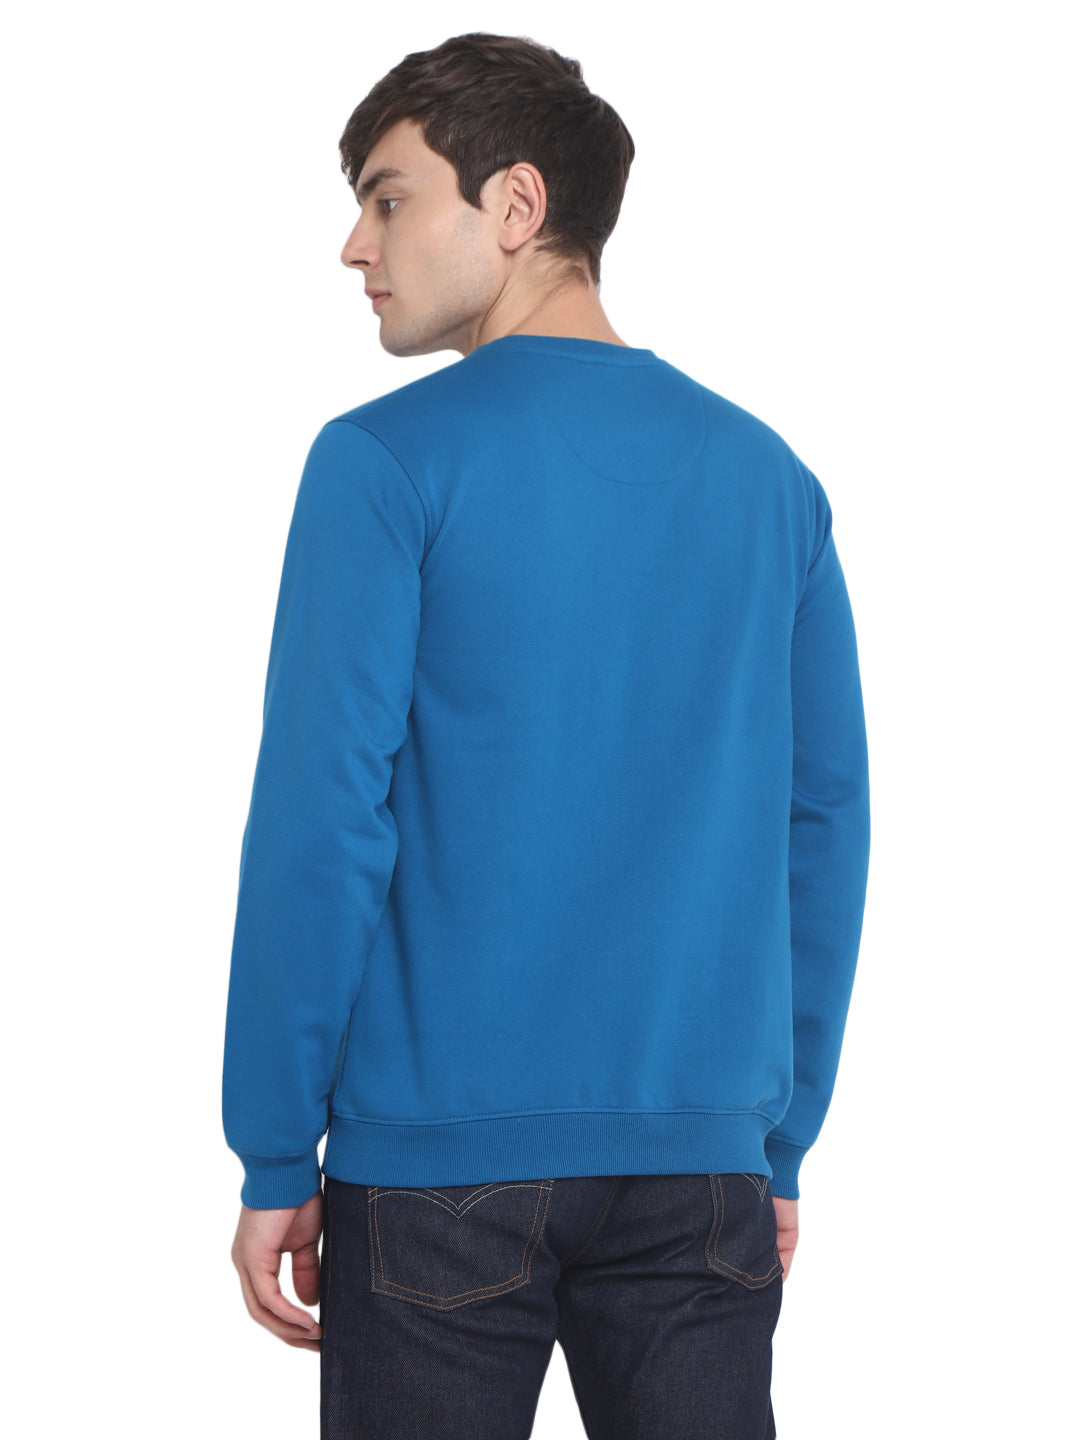 Round Neck Sweatshirt For Men - Mykonos Blue